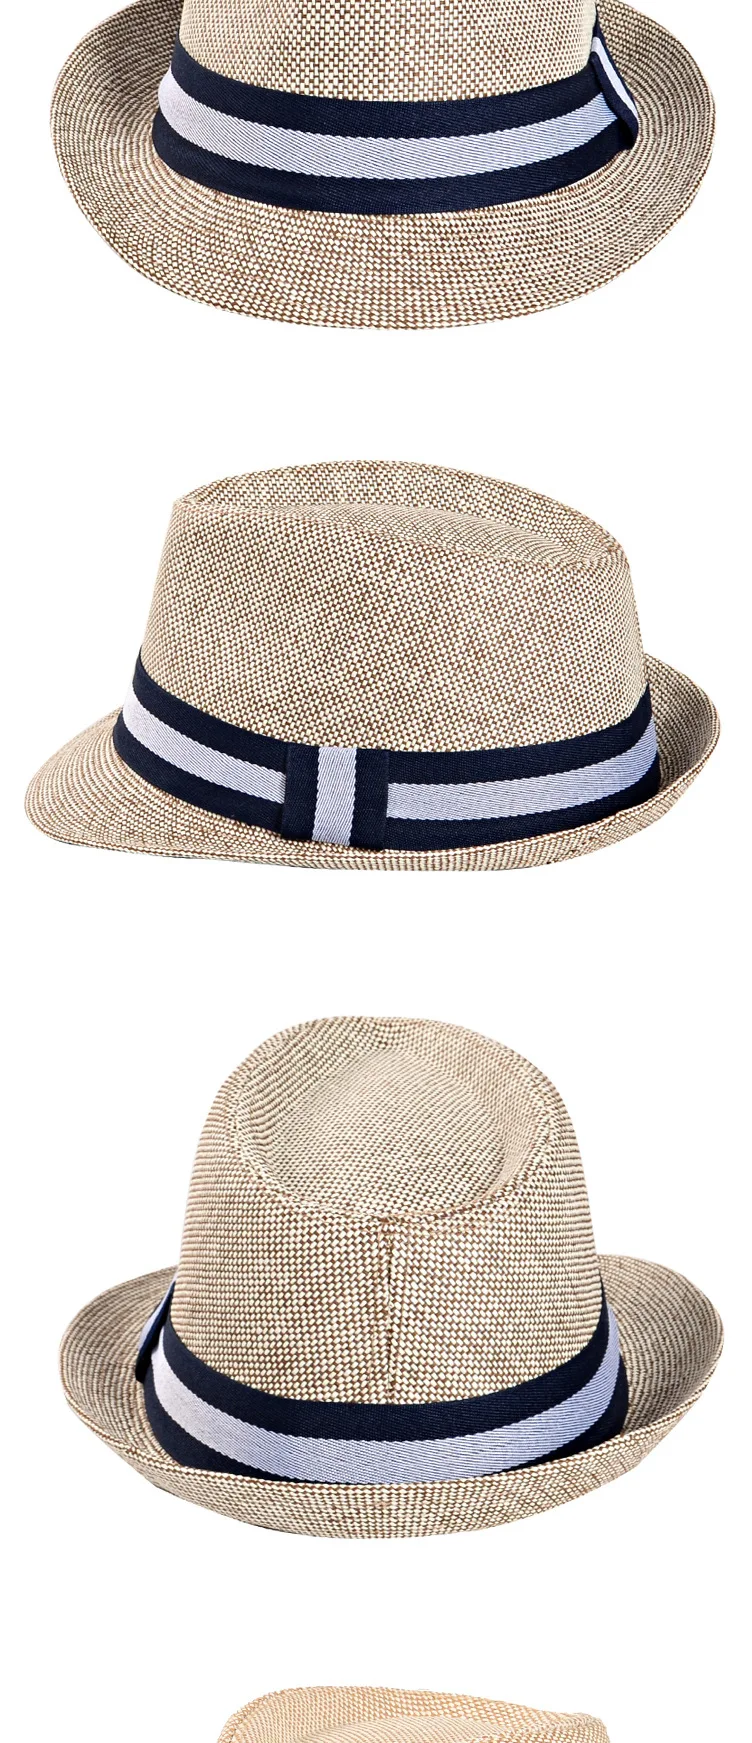 Англия Ретро Fedoras Топ джаз шляпа для мужчин и женщин весна лето повседневные шляпы кепка Классическая Солнцезащитная Шляпа Пляжная Панама шляпа